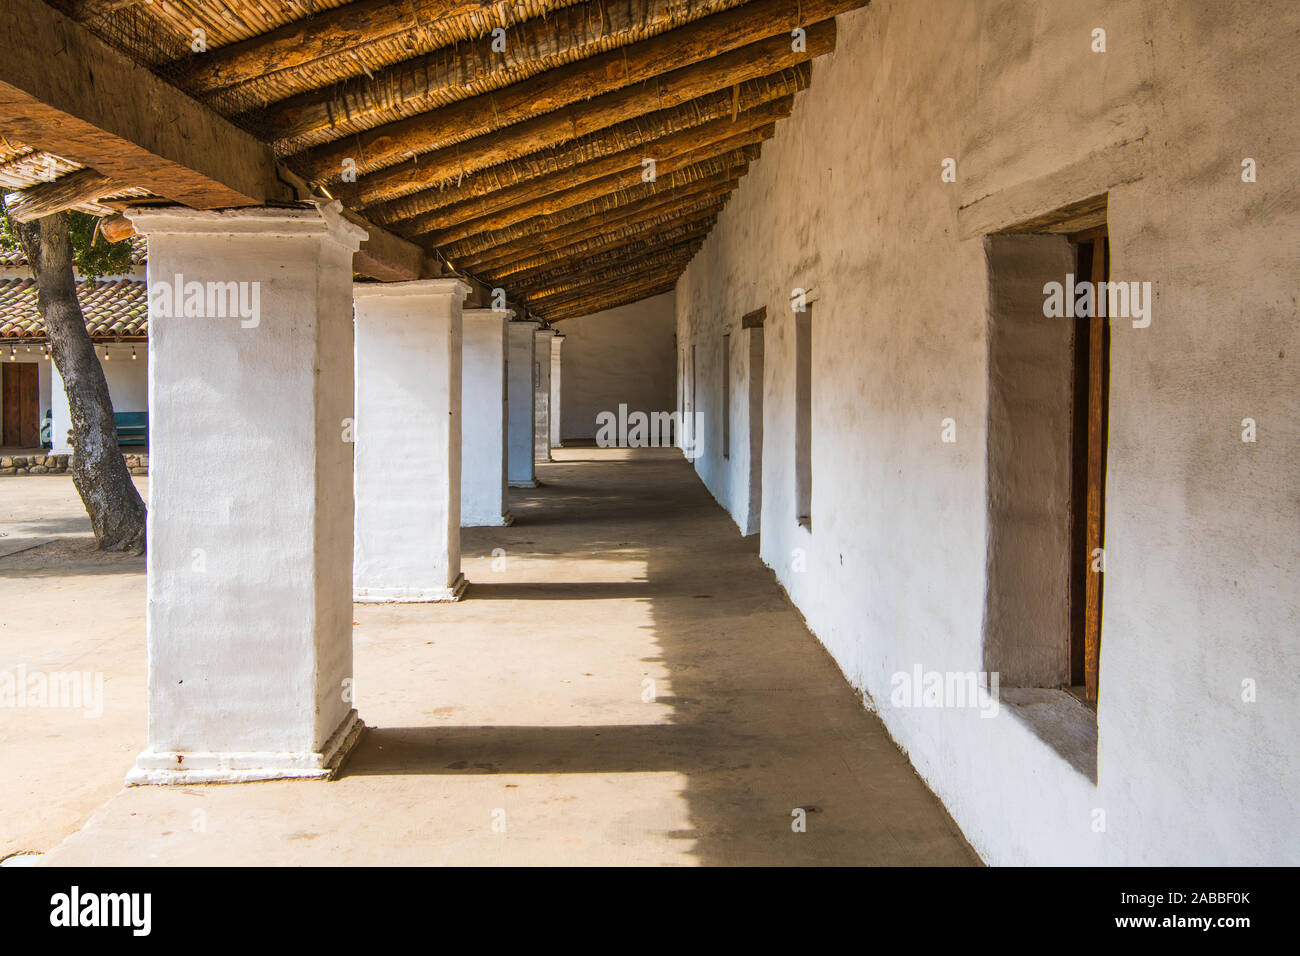 Lange Außenkorridor mit weiß verputzten Wänden unter dem rustikalen hölzernen Dach eines historischen Gebäude im spanischen Stil in Santa Barbara, Cal Stockfoto